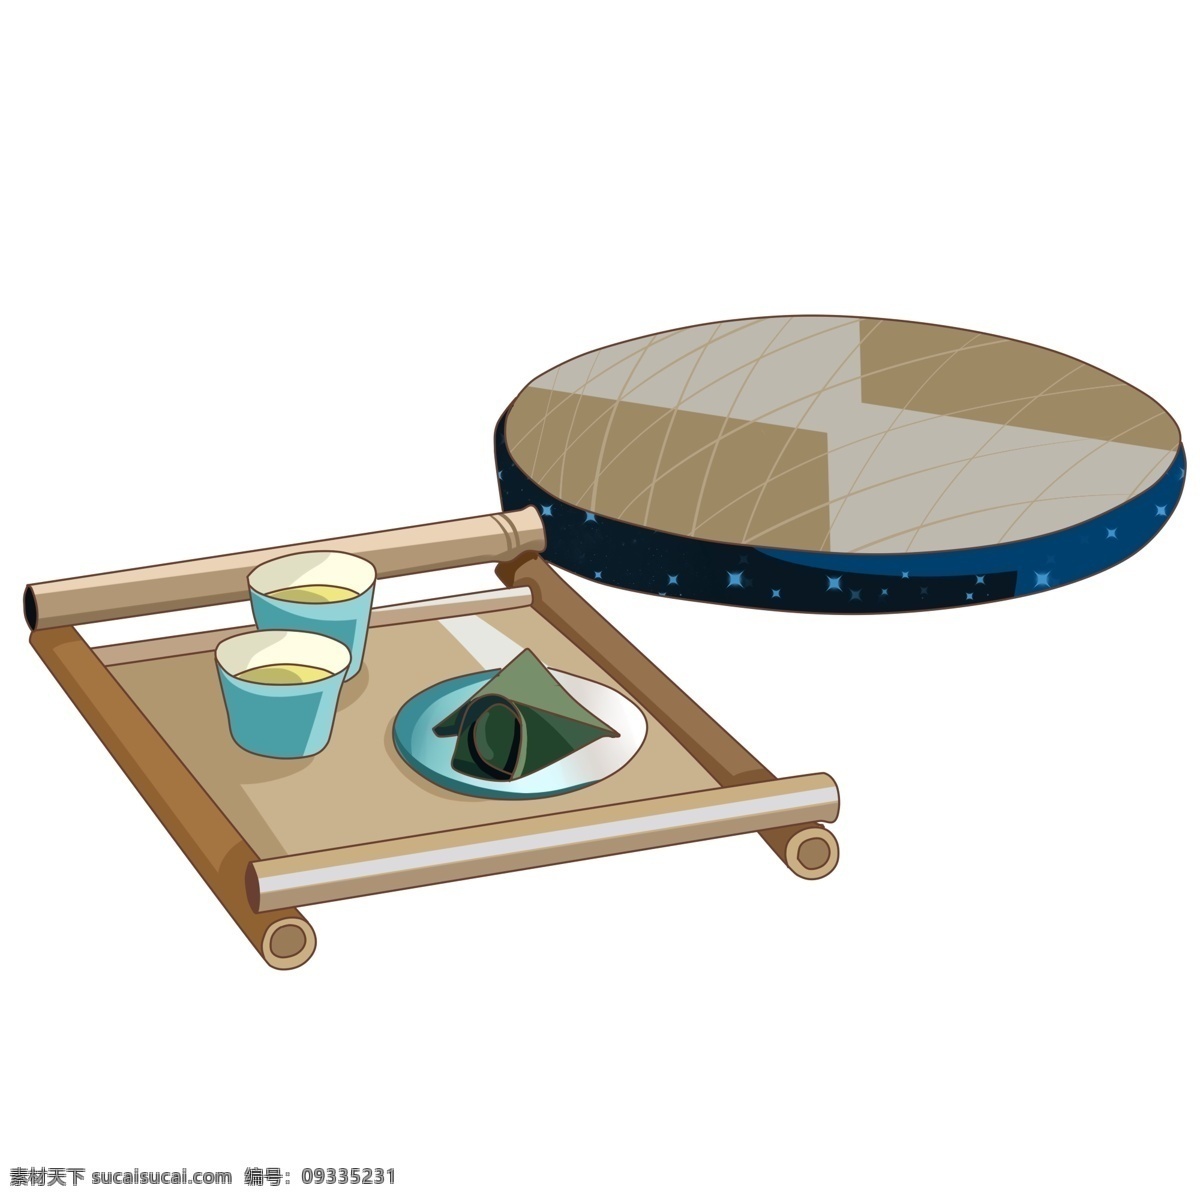 日本 坐垫 木桌 插画 座垫 日式 榻榻米 茶具 茶馆 竹席 榻榻米床 日本清茶 竹子桌